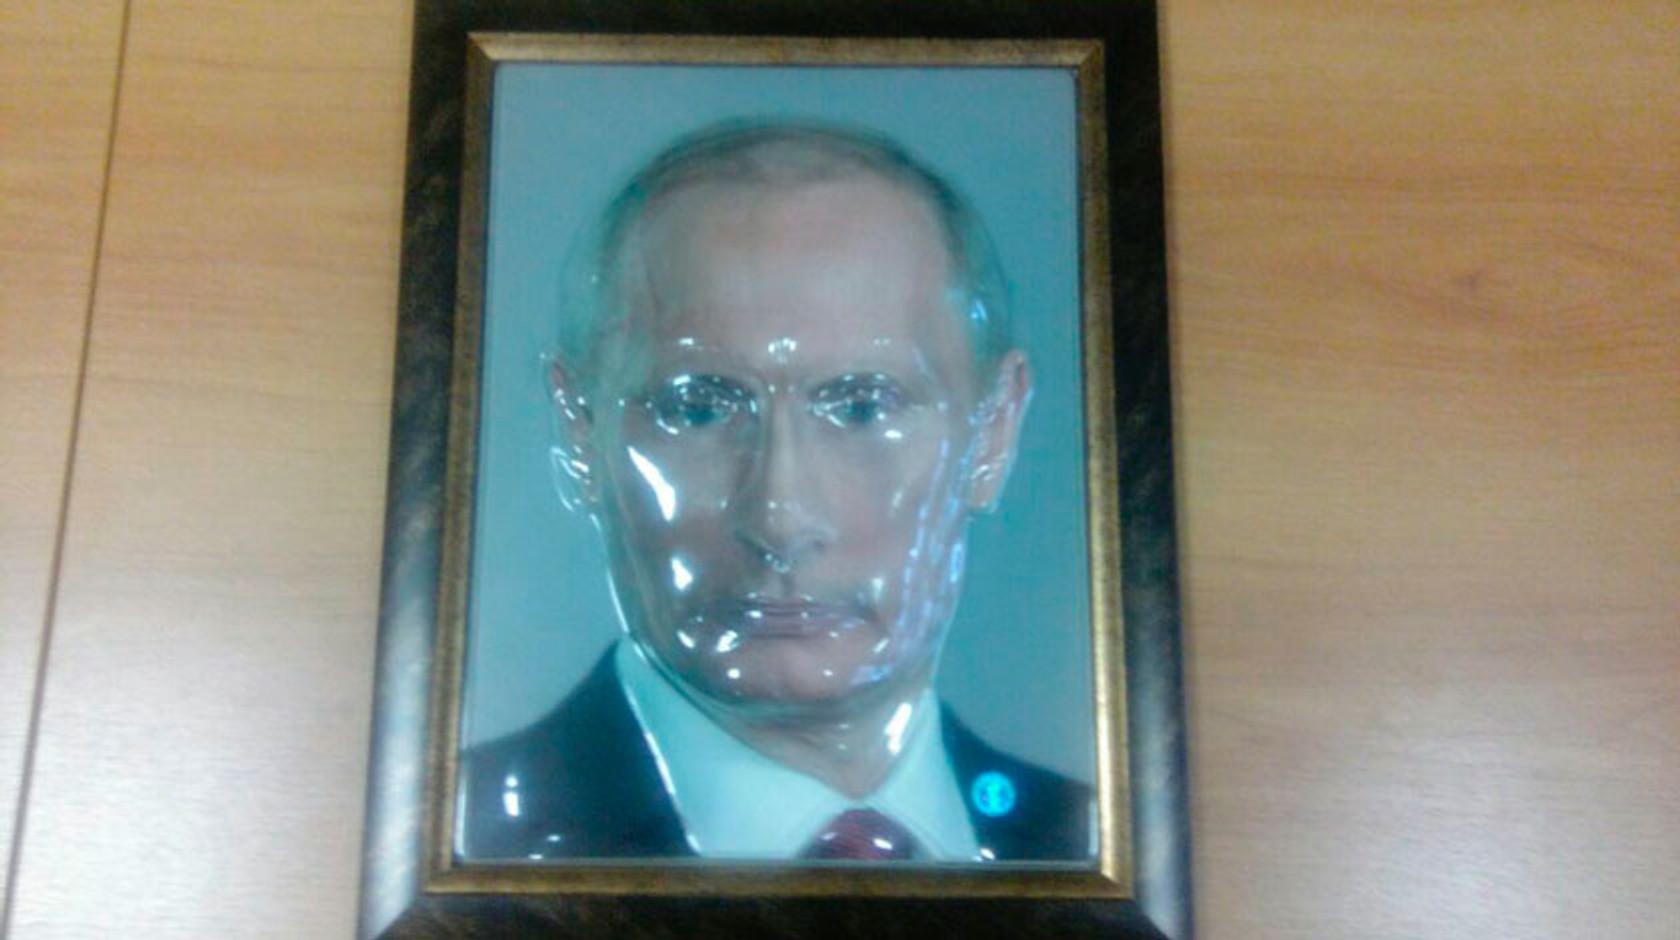 Ярославська область закупить для незрячих школярів 3D-портрети Путіна, Сталіна і Трампа, щоб діти змогли дізнатися, як вони виглядають